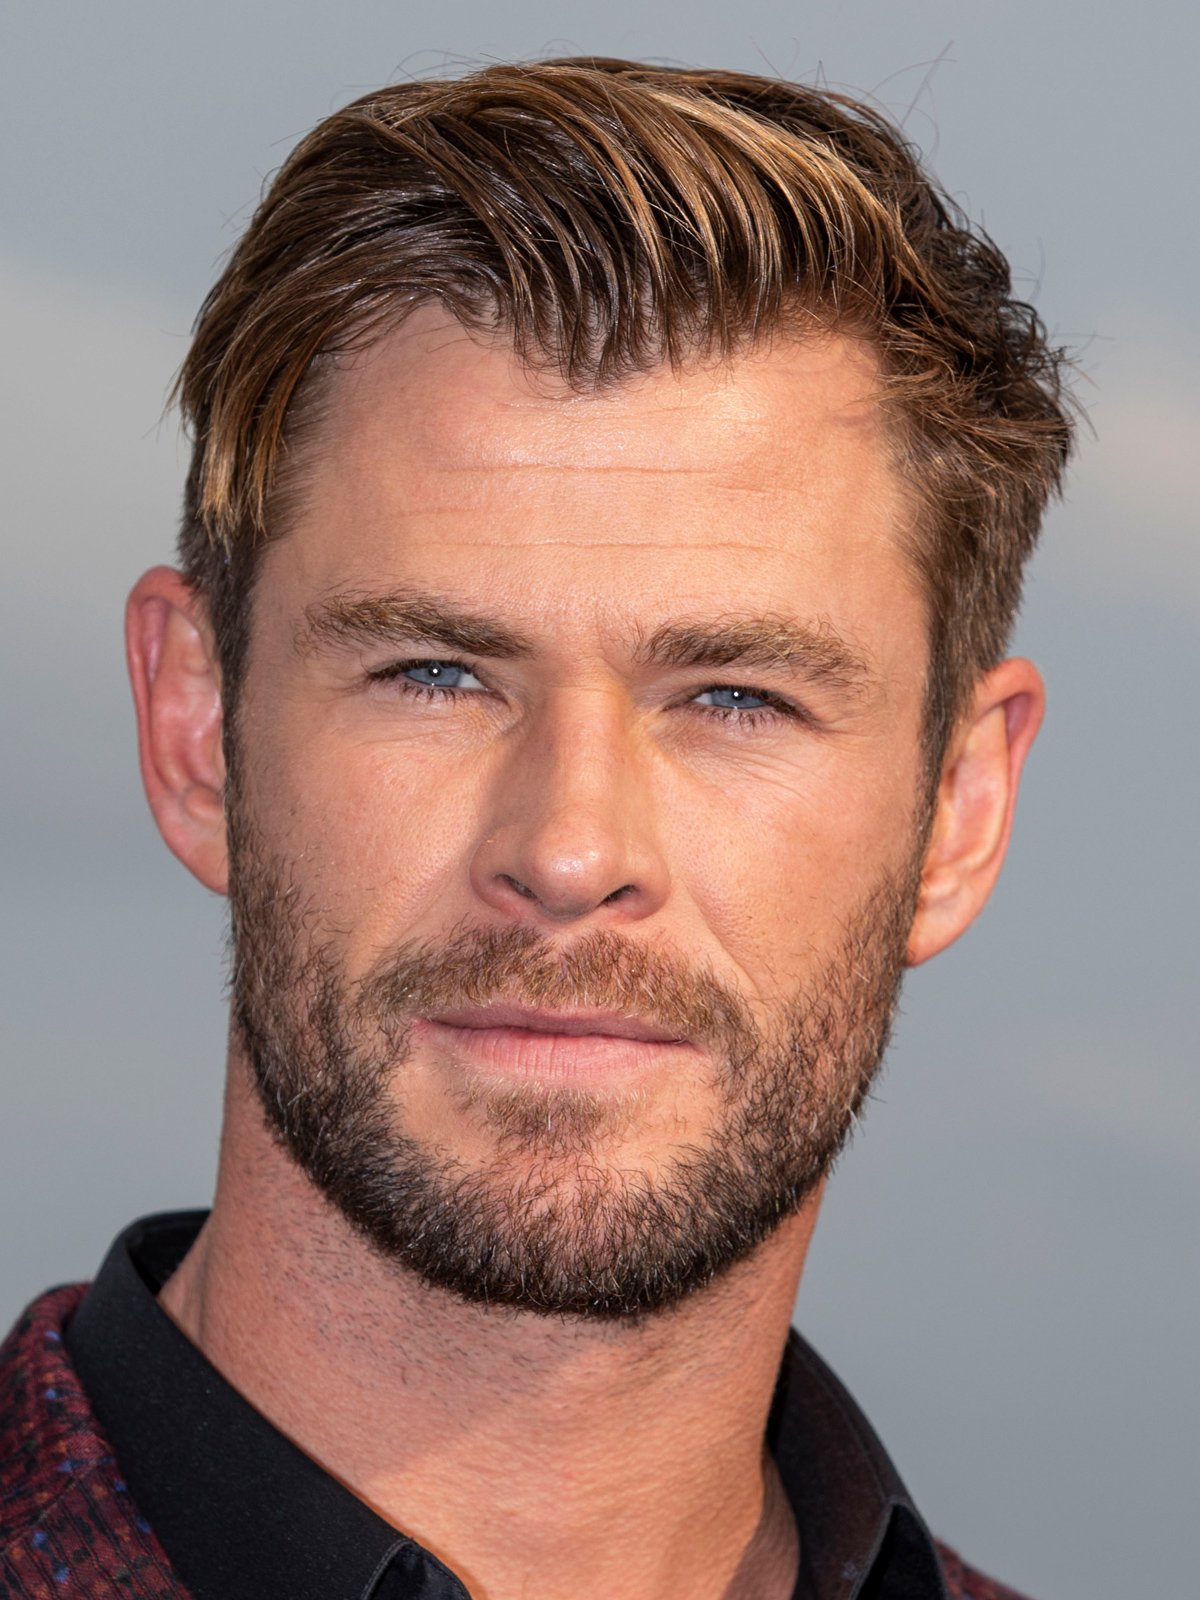 Chris Hemsworth, o Thor da Marvel, descobre ter uma predisposição ao  Alzheimer